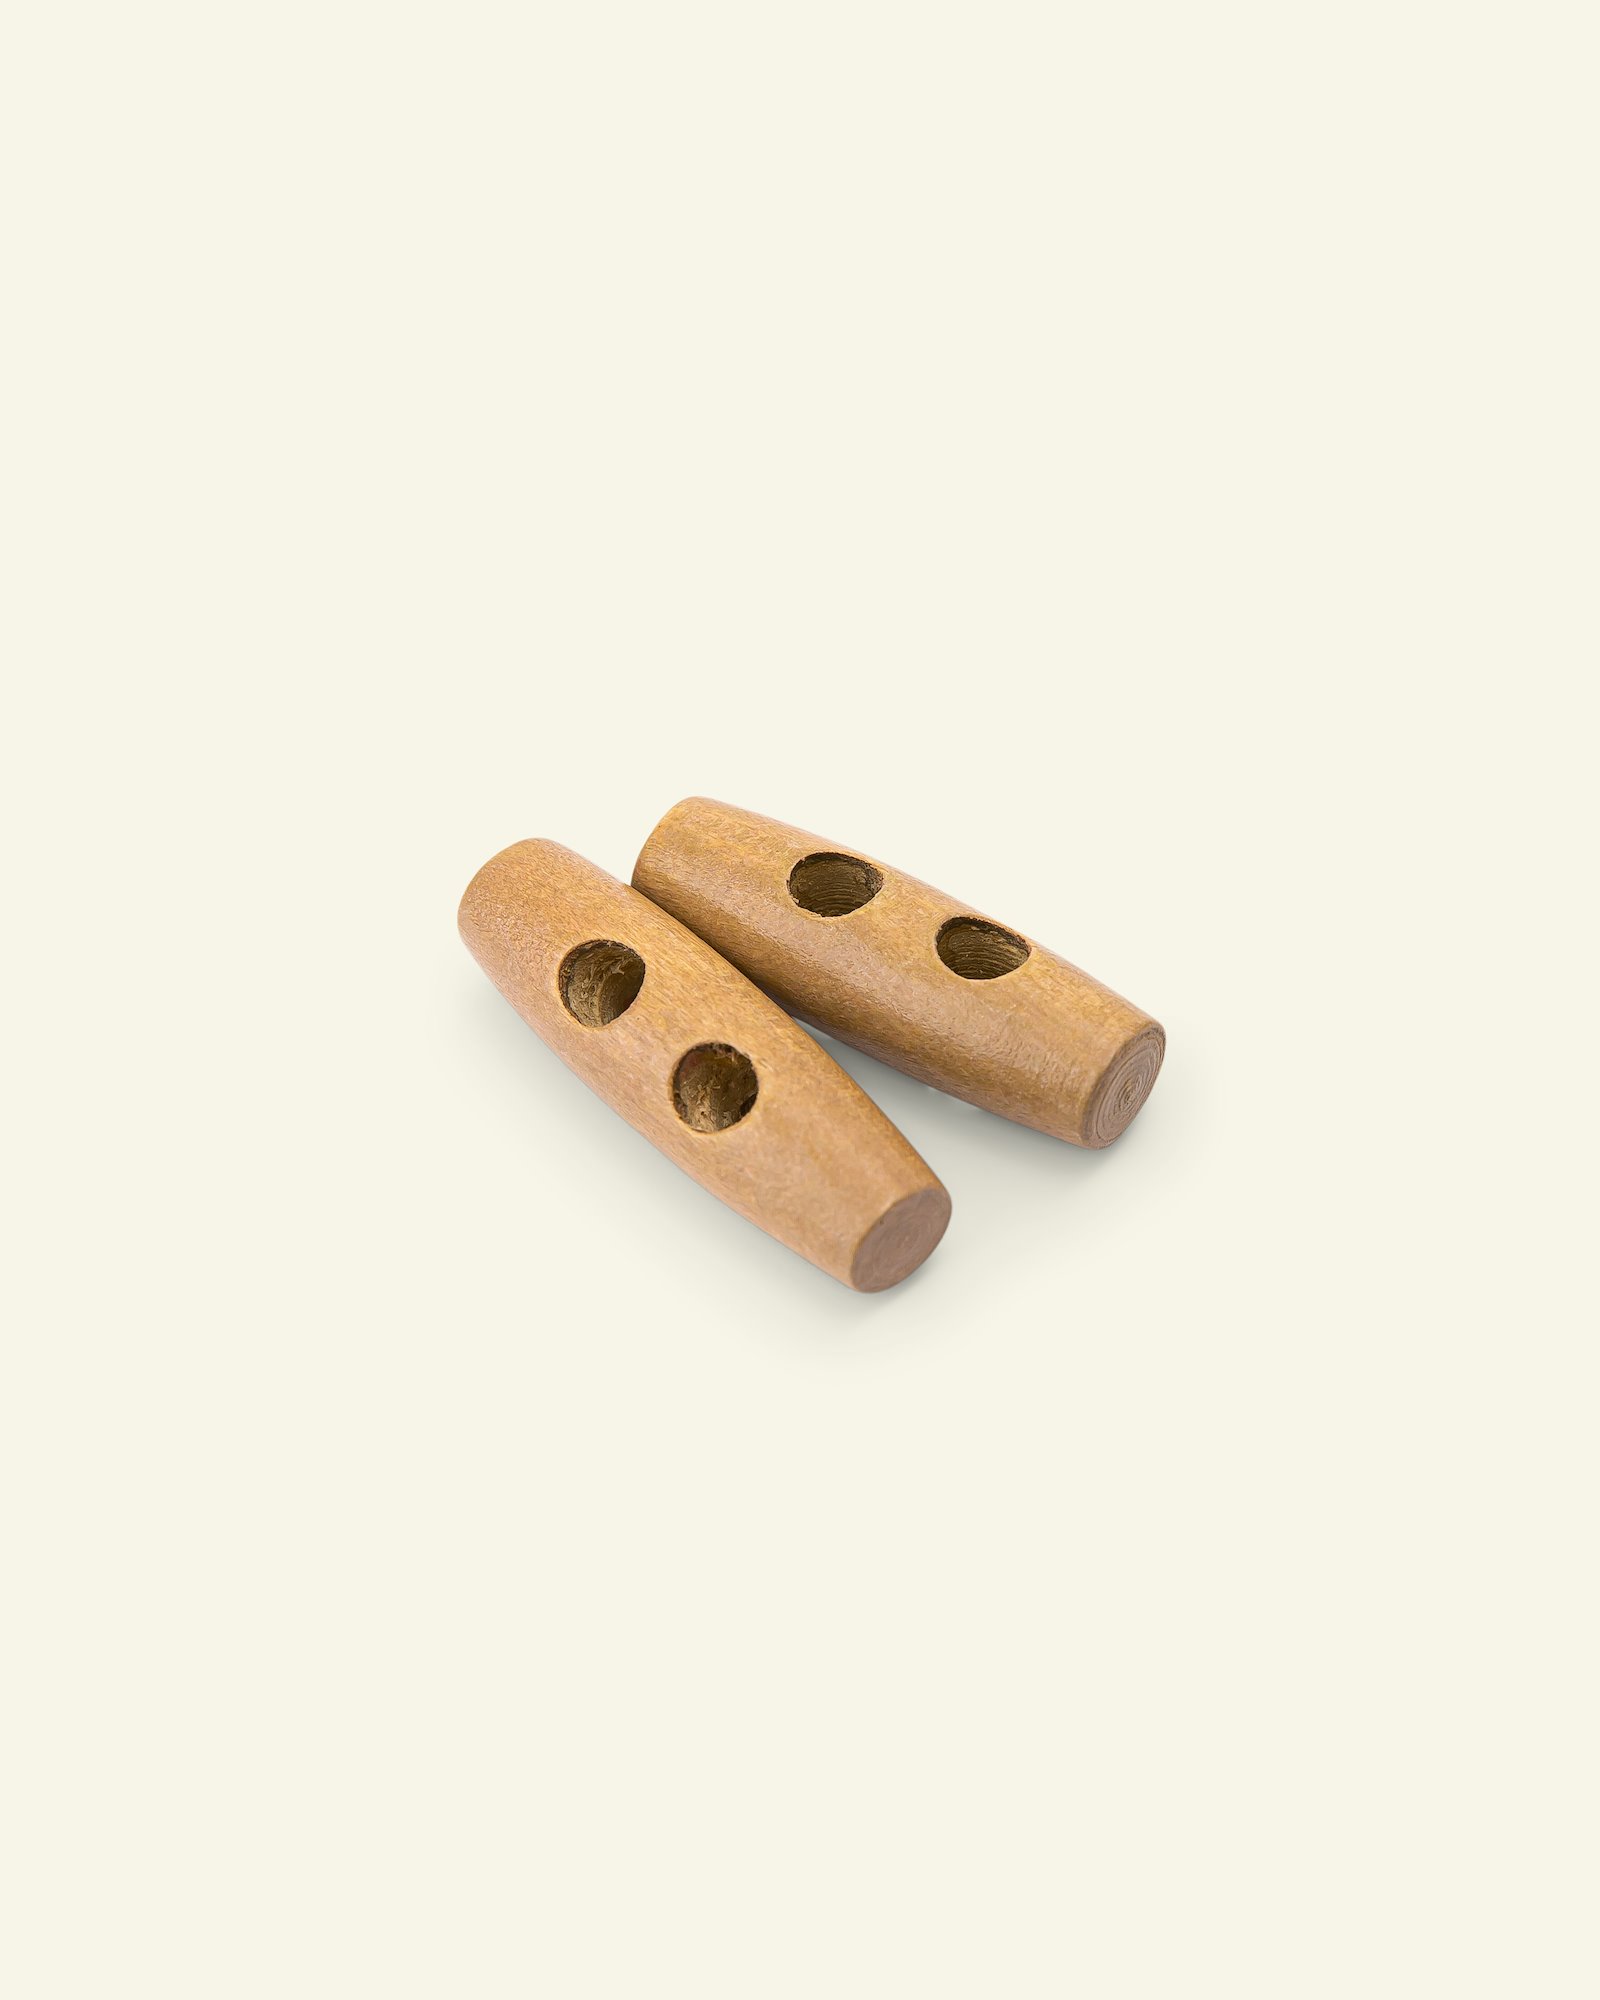 Dufflecoat-Knopf 2-Loch 40mm Holz,2St. 33520_pack